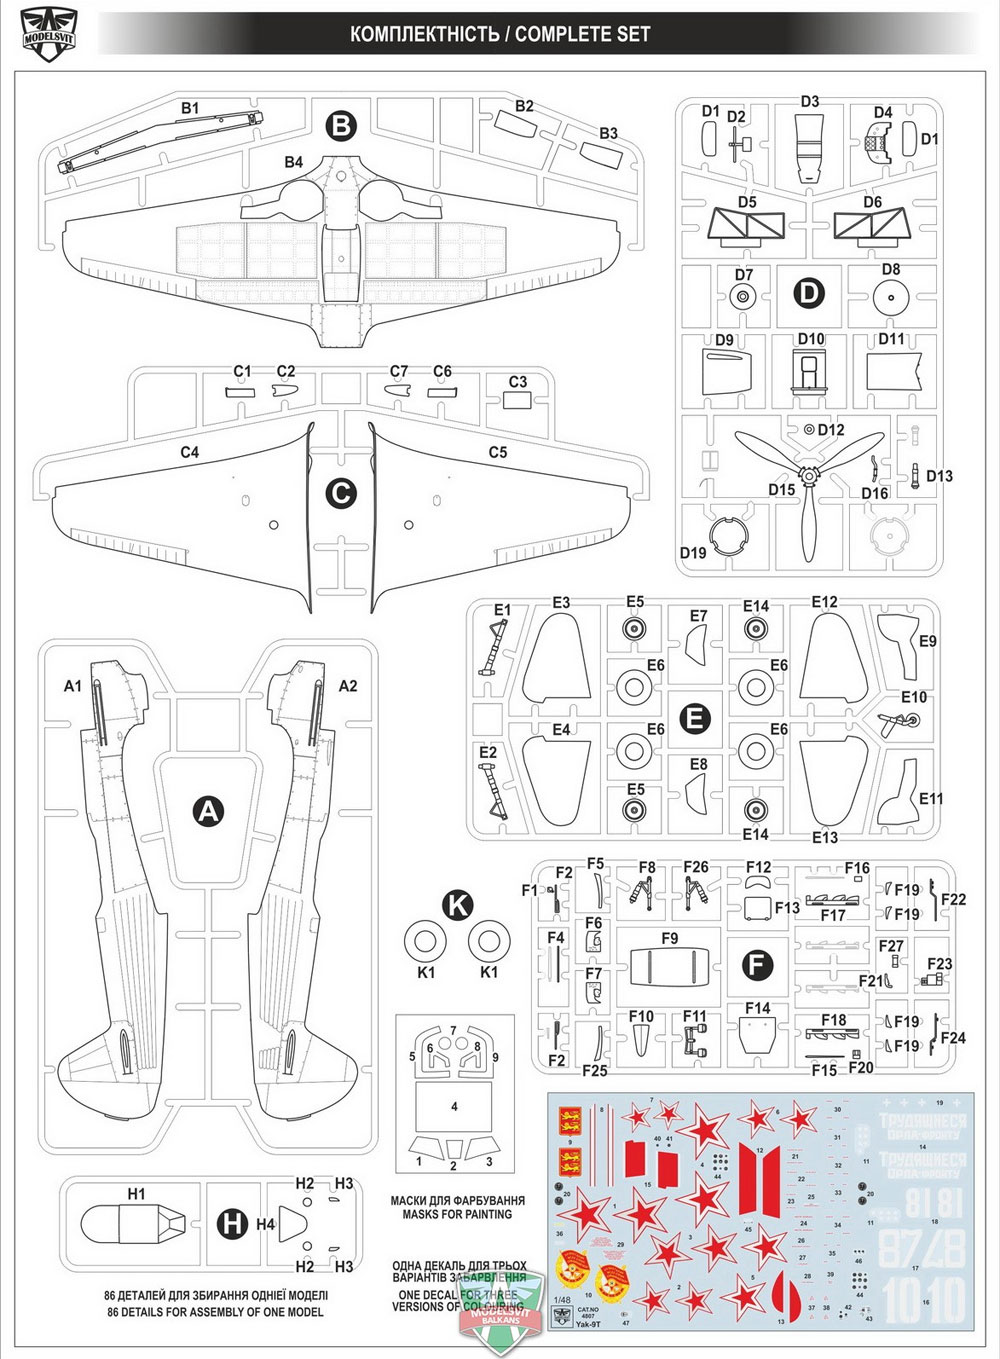 Yak-9T プラモデル (モデルズビット 1/48 エアクラフト プラモデル No.4807) 商品画像_1